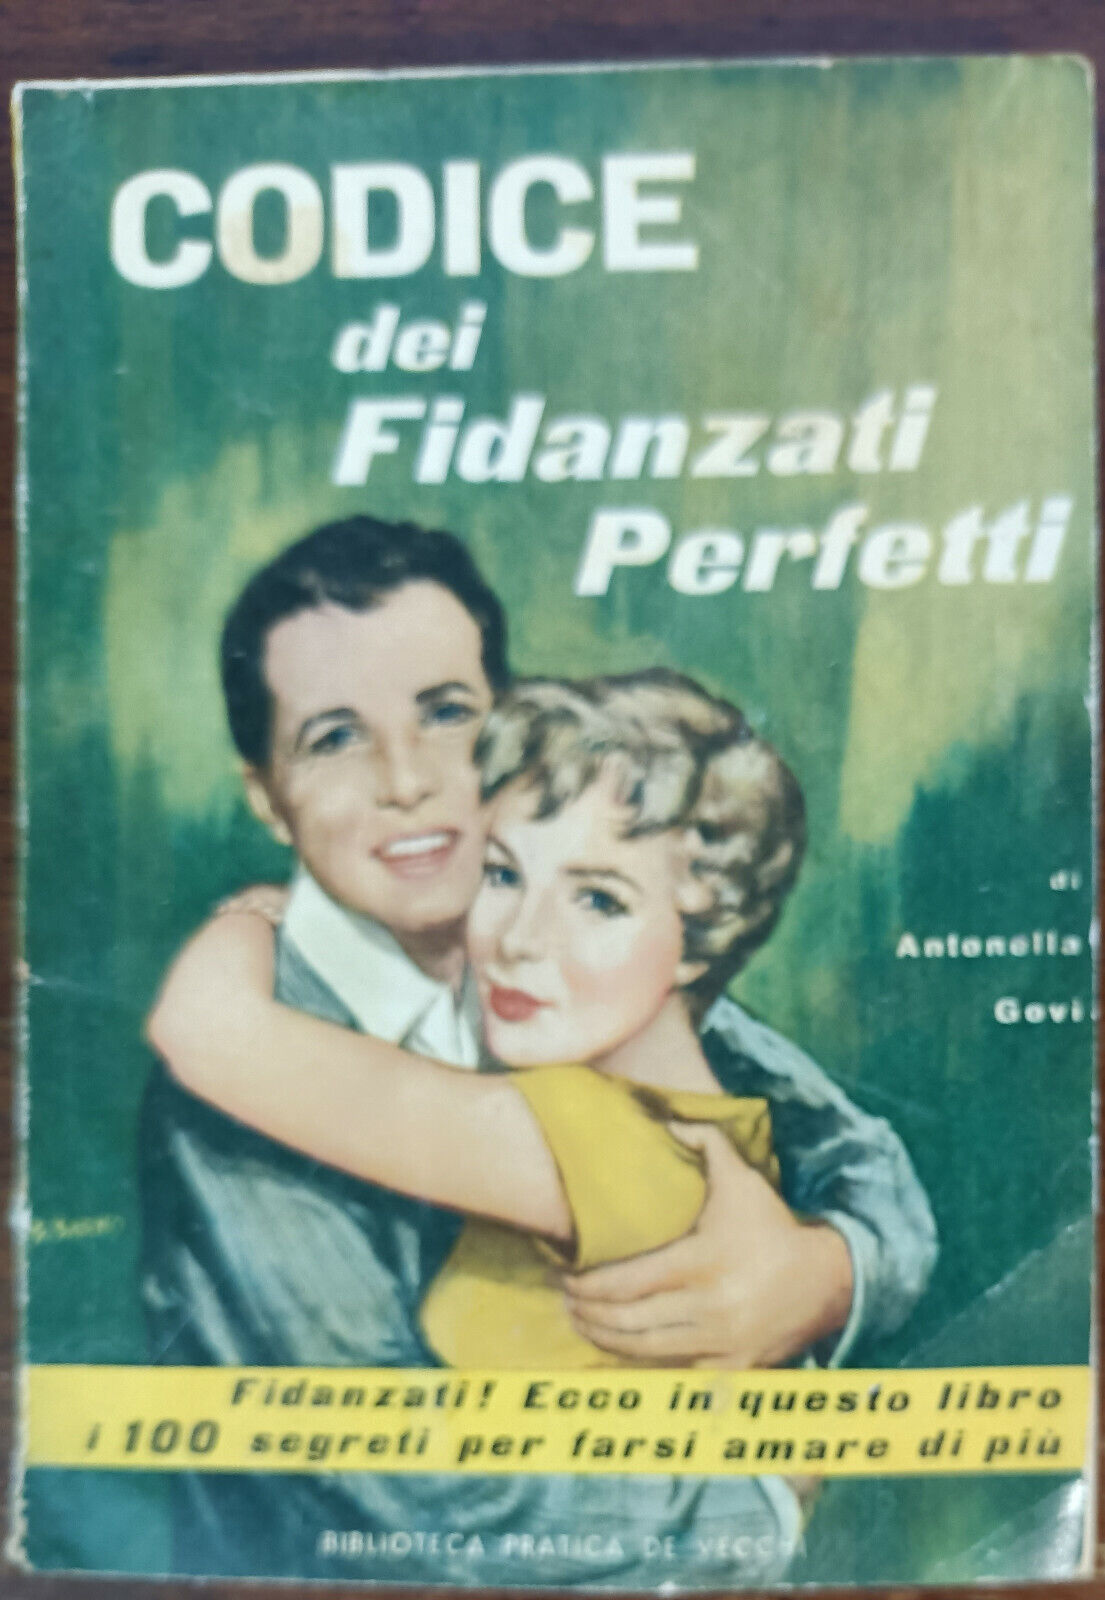 Codice dei fidanzati perfetti - Govi - Biblioteca pratica De Vecchi, 1959 - A